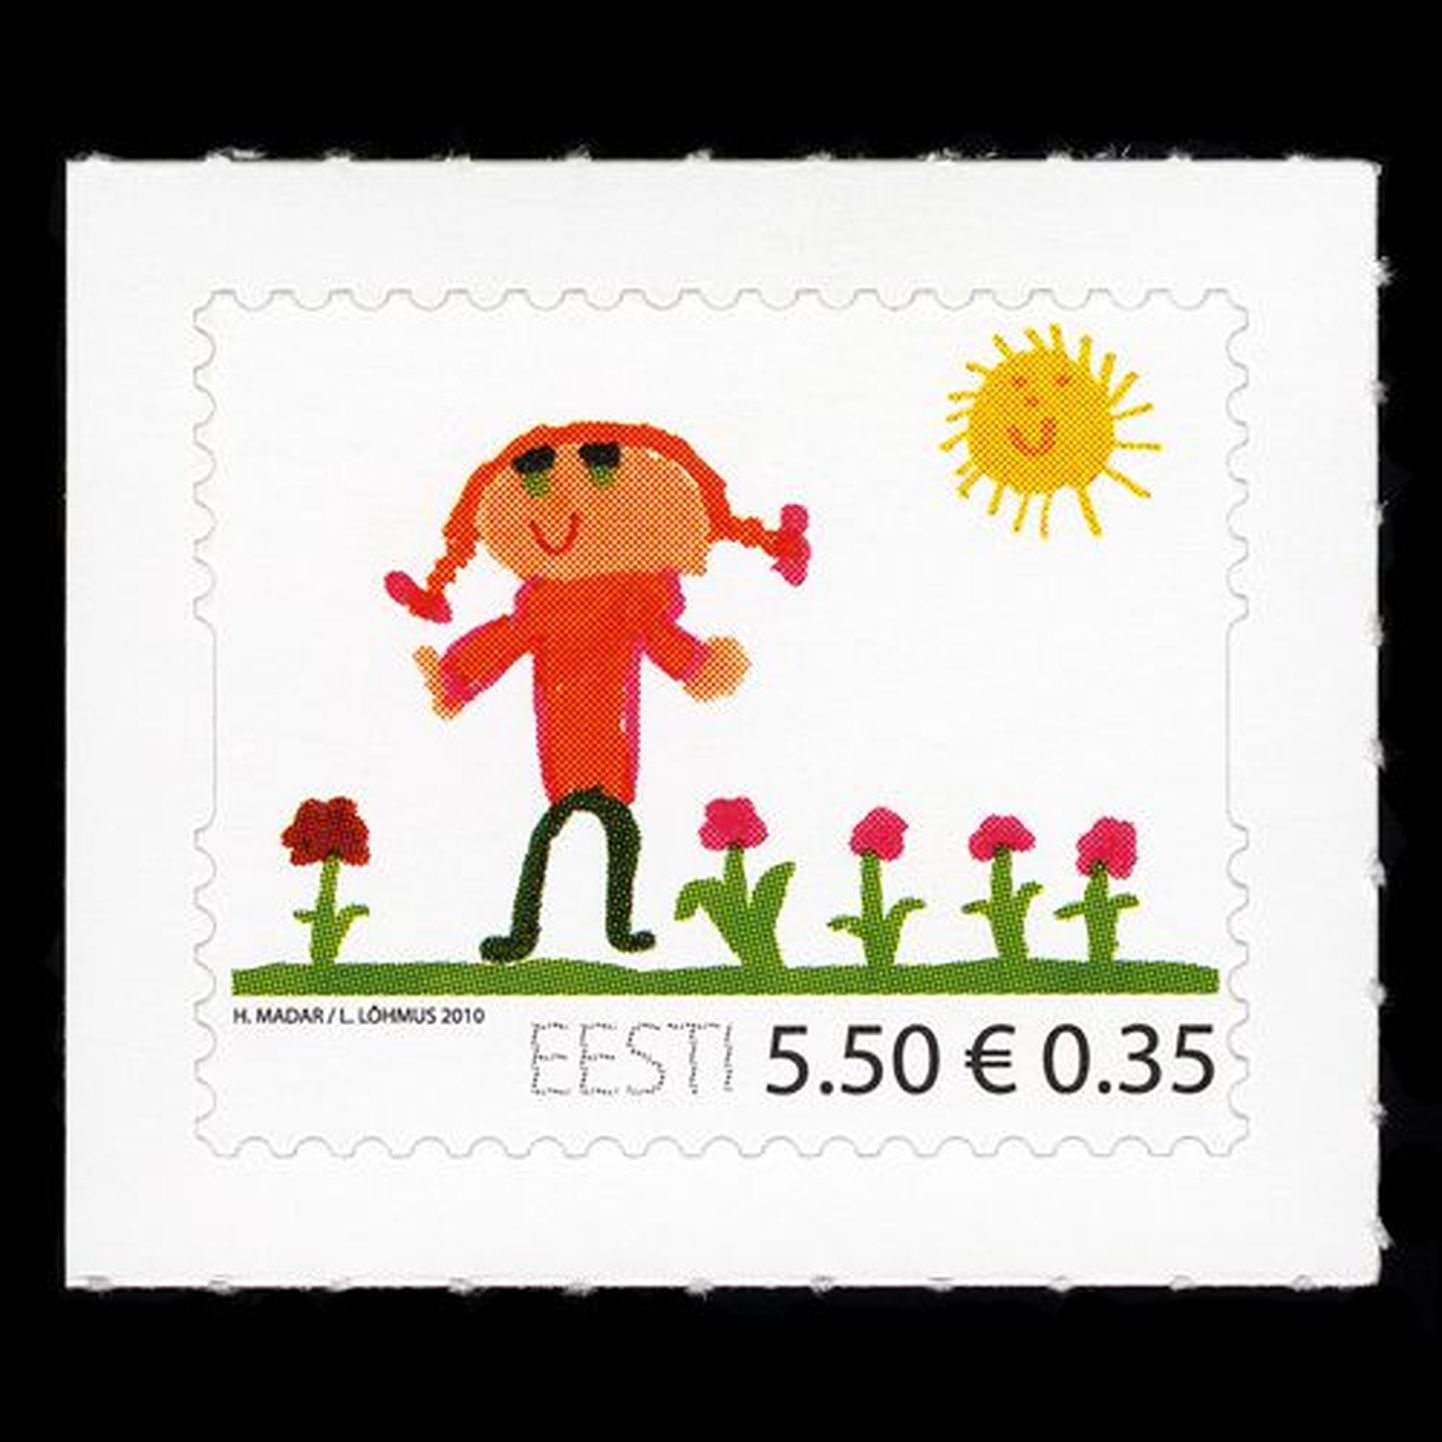 Lastekaitsepäevale pühendatud postmark.